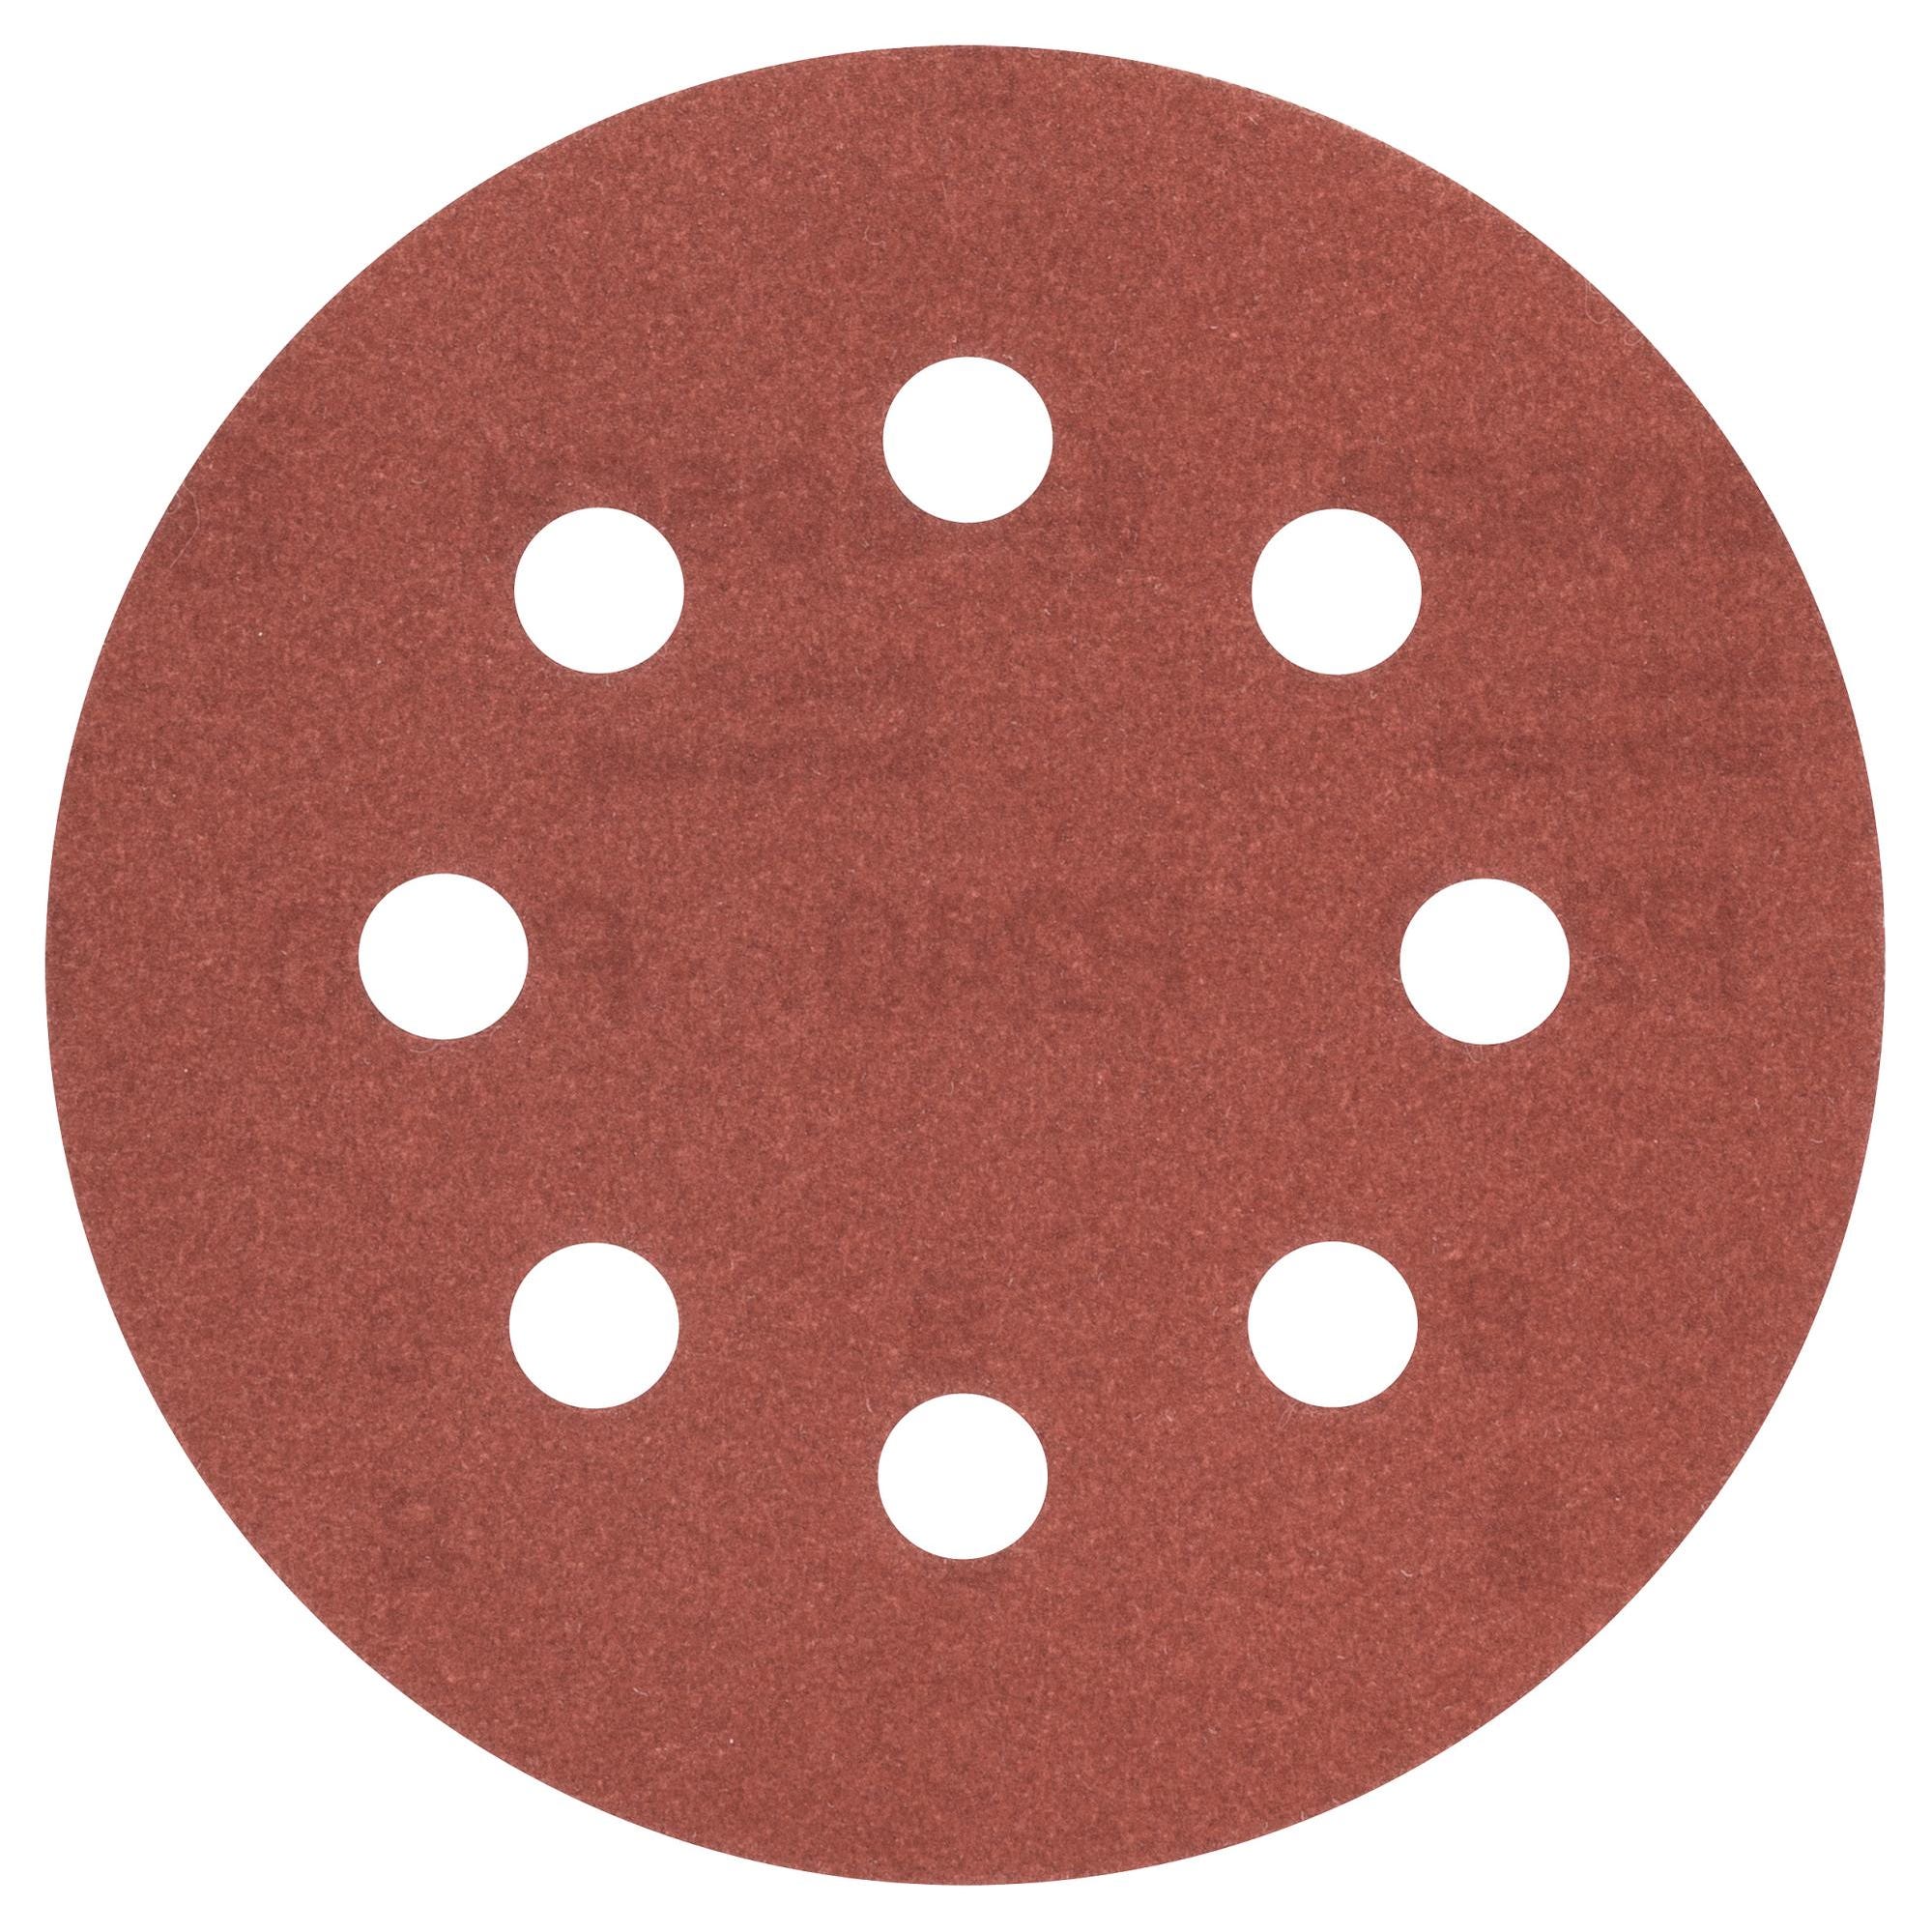 5 disques abrasifs pour ponceuse excentrique BOSCH, 115 mm grains 240